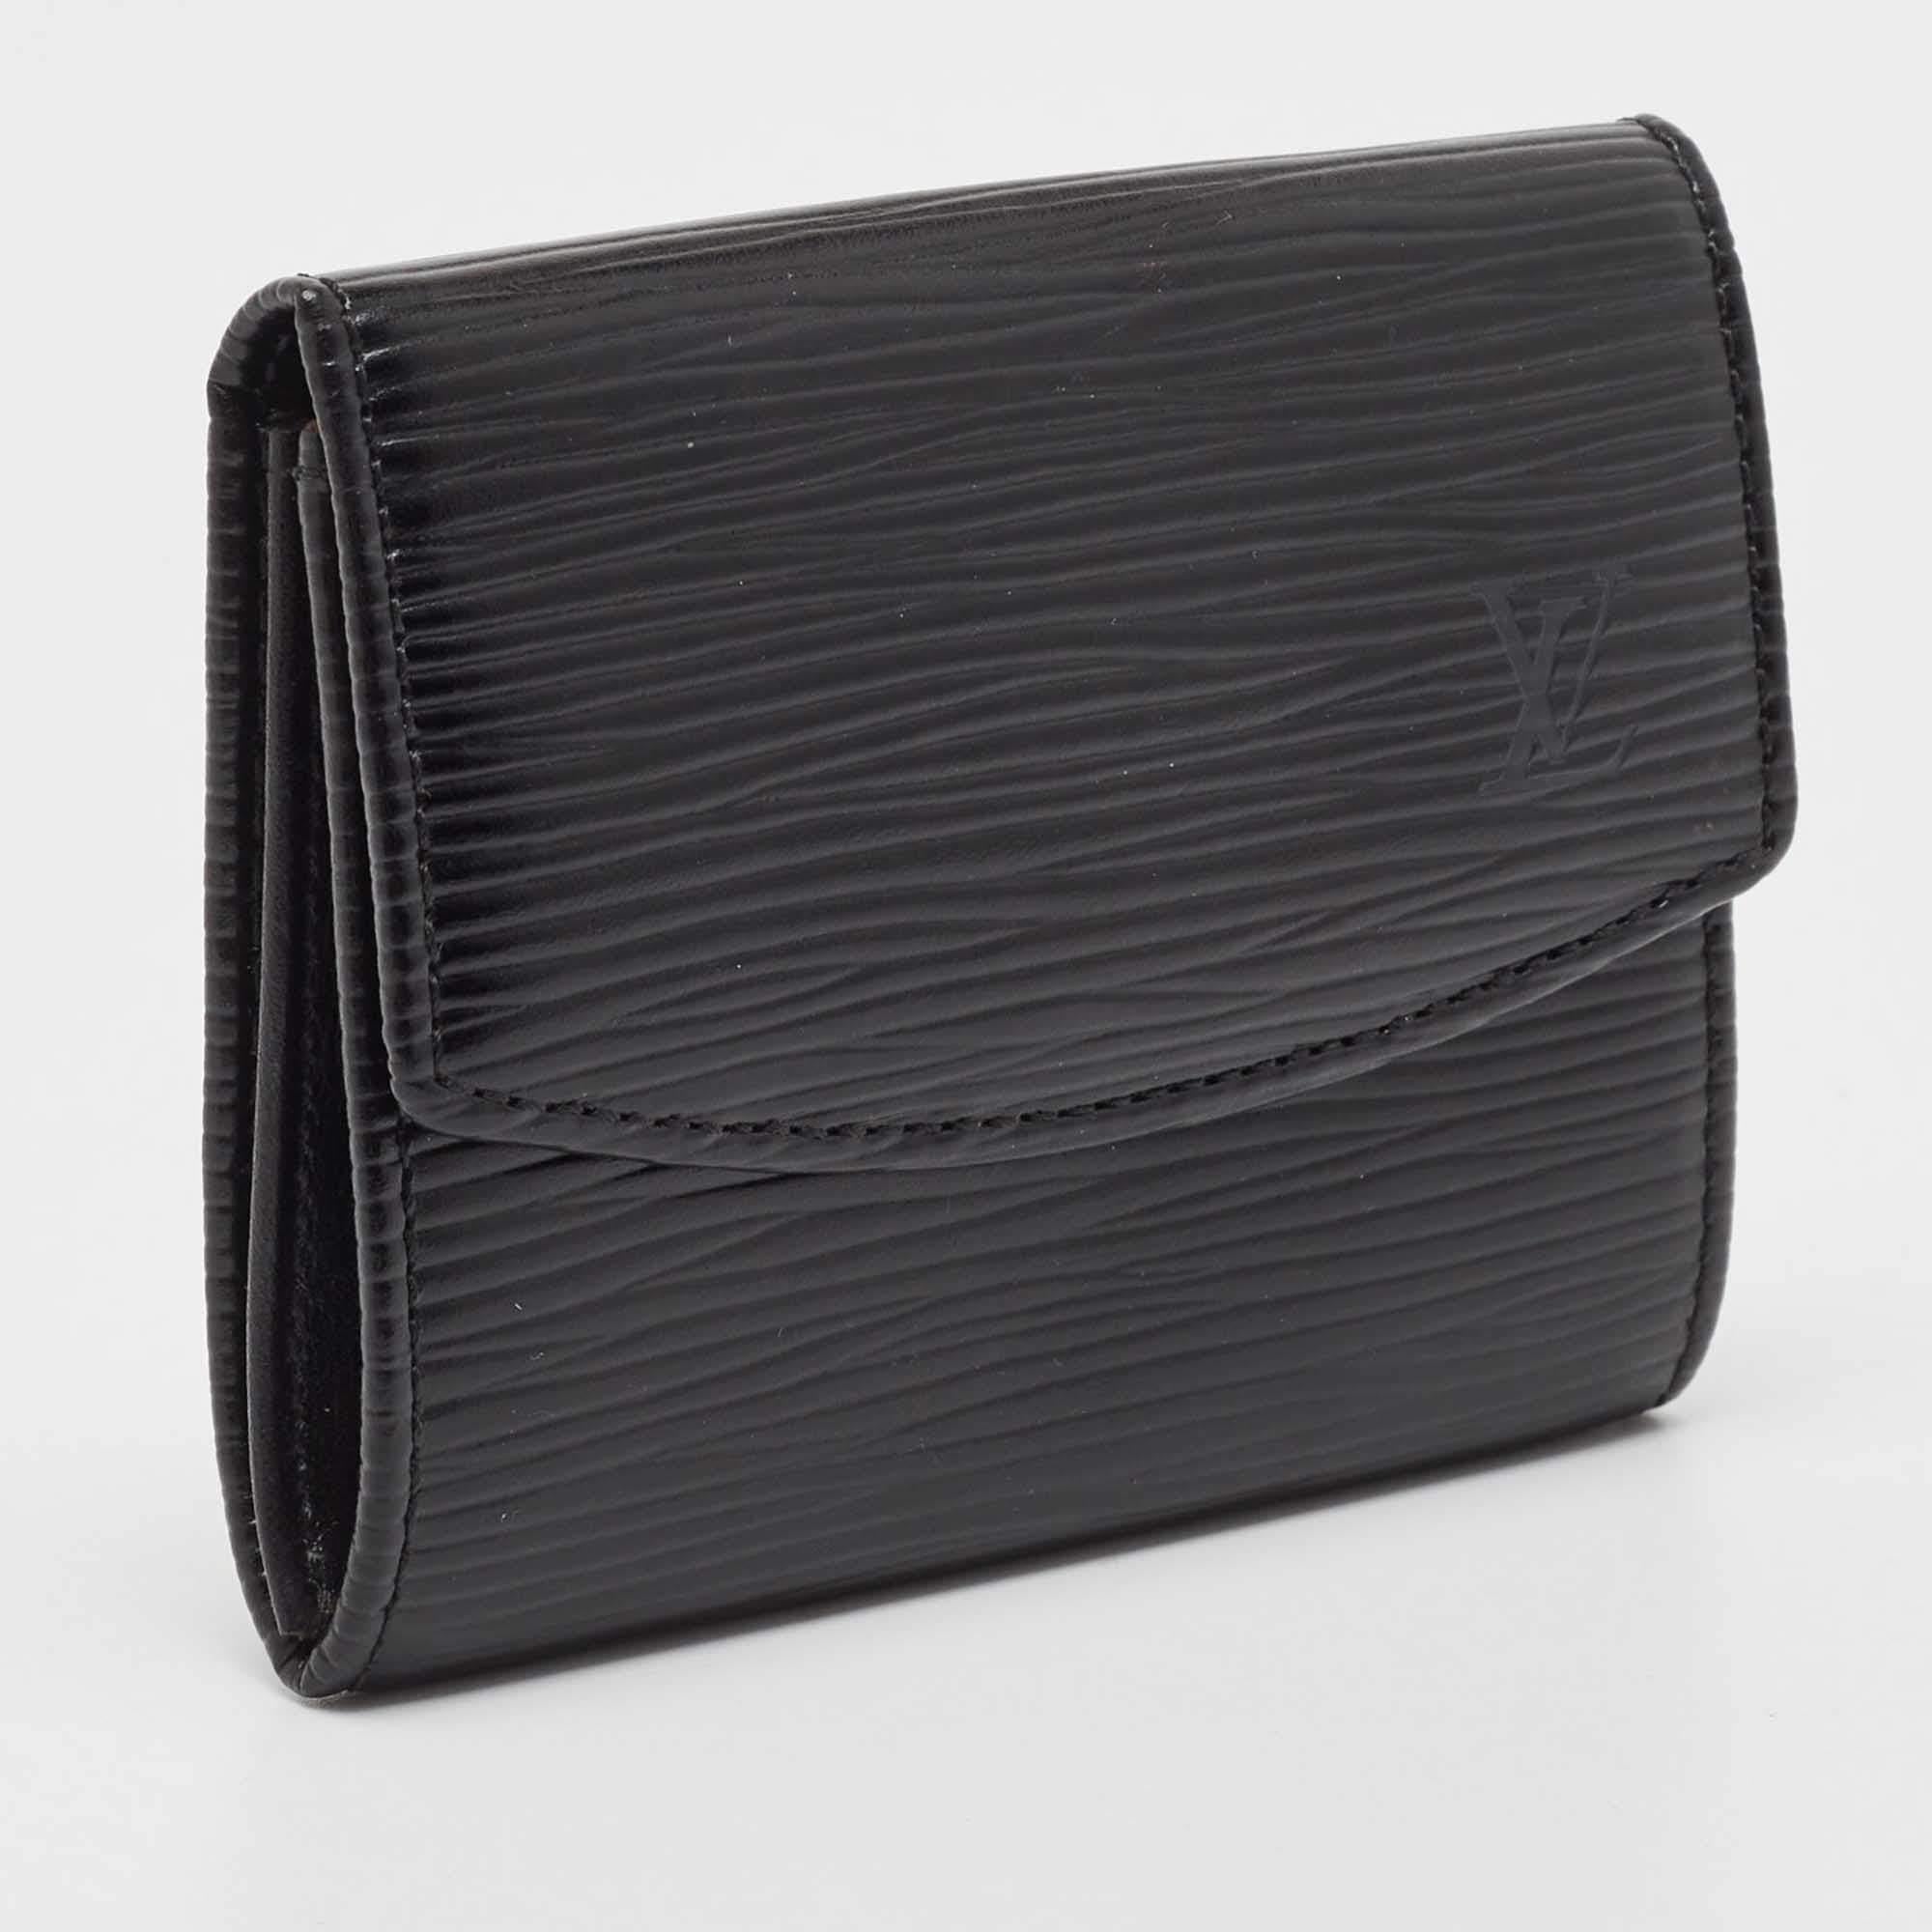 Der LV-Kartenhalter vereint Eleganz und Funktionalität in einem schlanken Design. Er ist aus Leder gefertigt und hat einen schwarzen Farbton, der ihm einen Hauch von Raffinesse verleiht.

